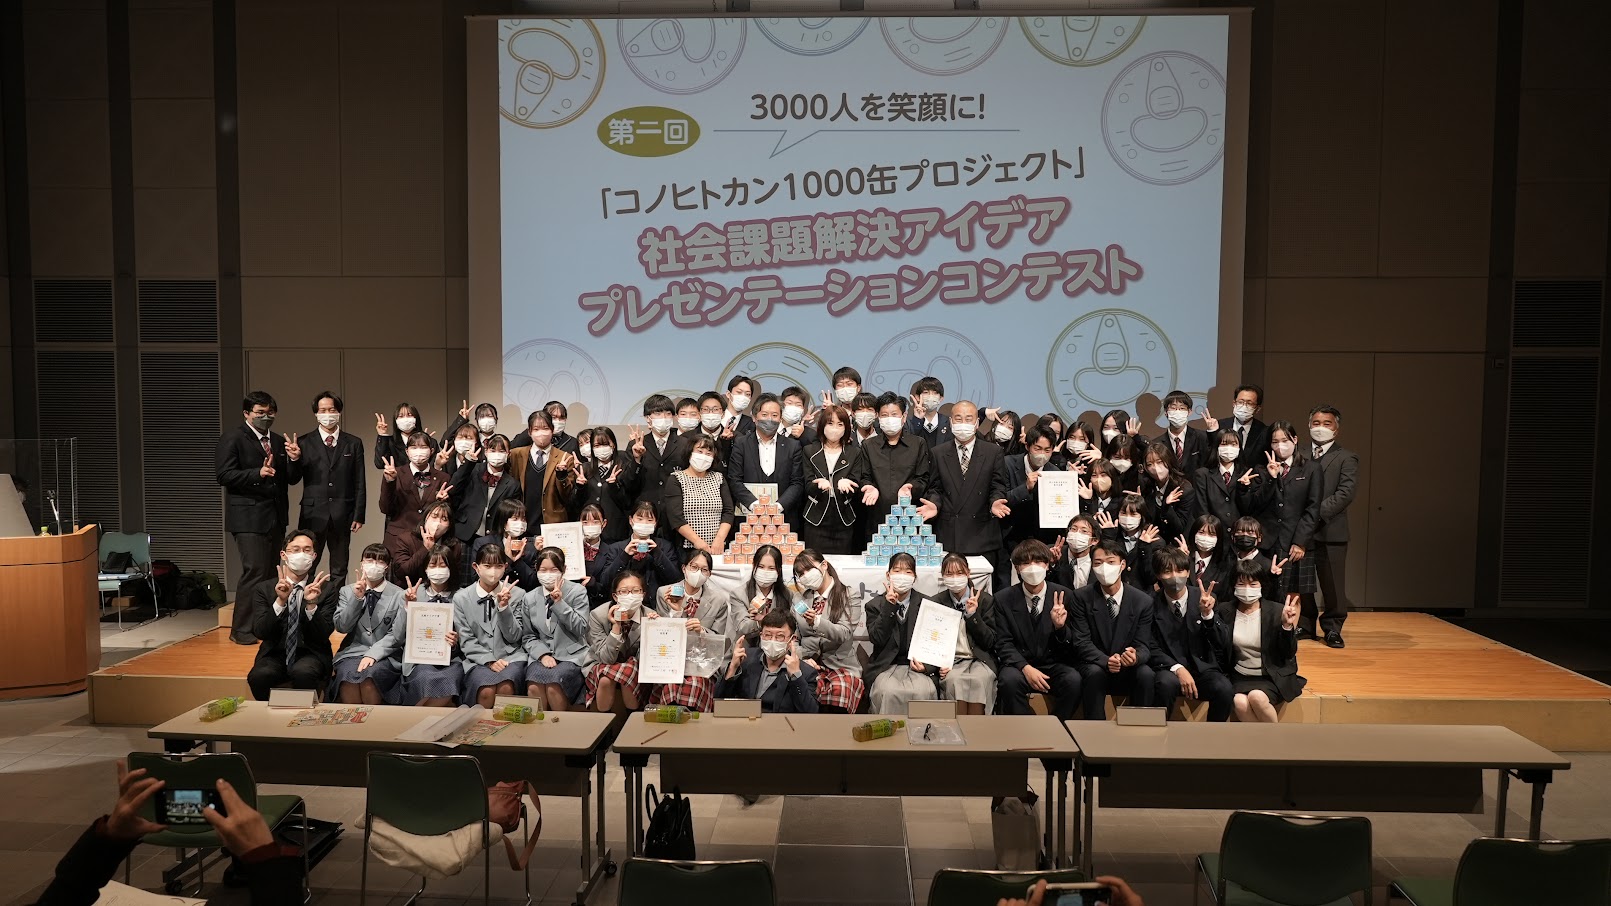 高校生社会課題解決アイデアコンテスト「第2回コノヒトカン1000缶プロジェクト」のイメージ写真